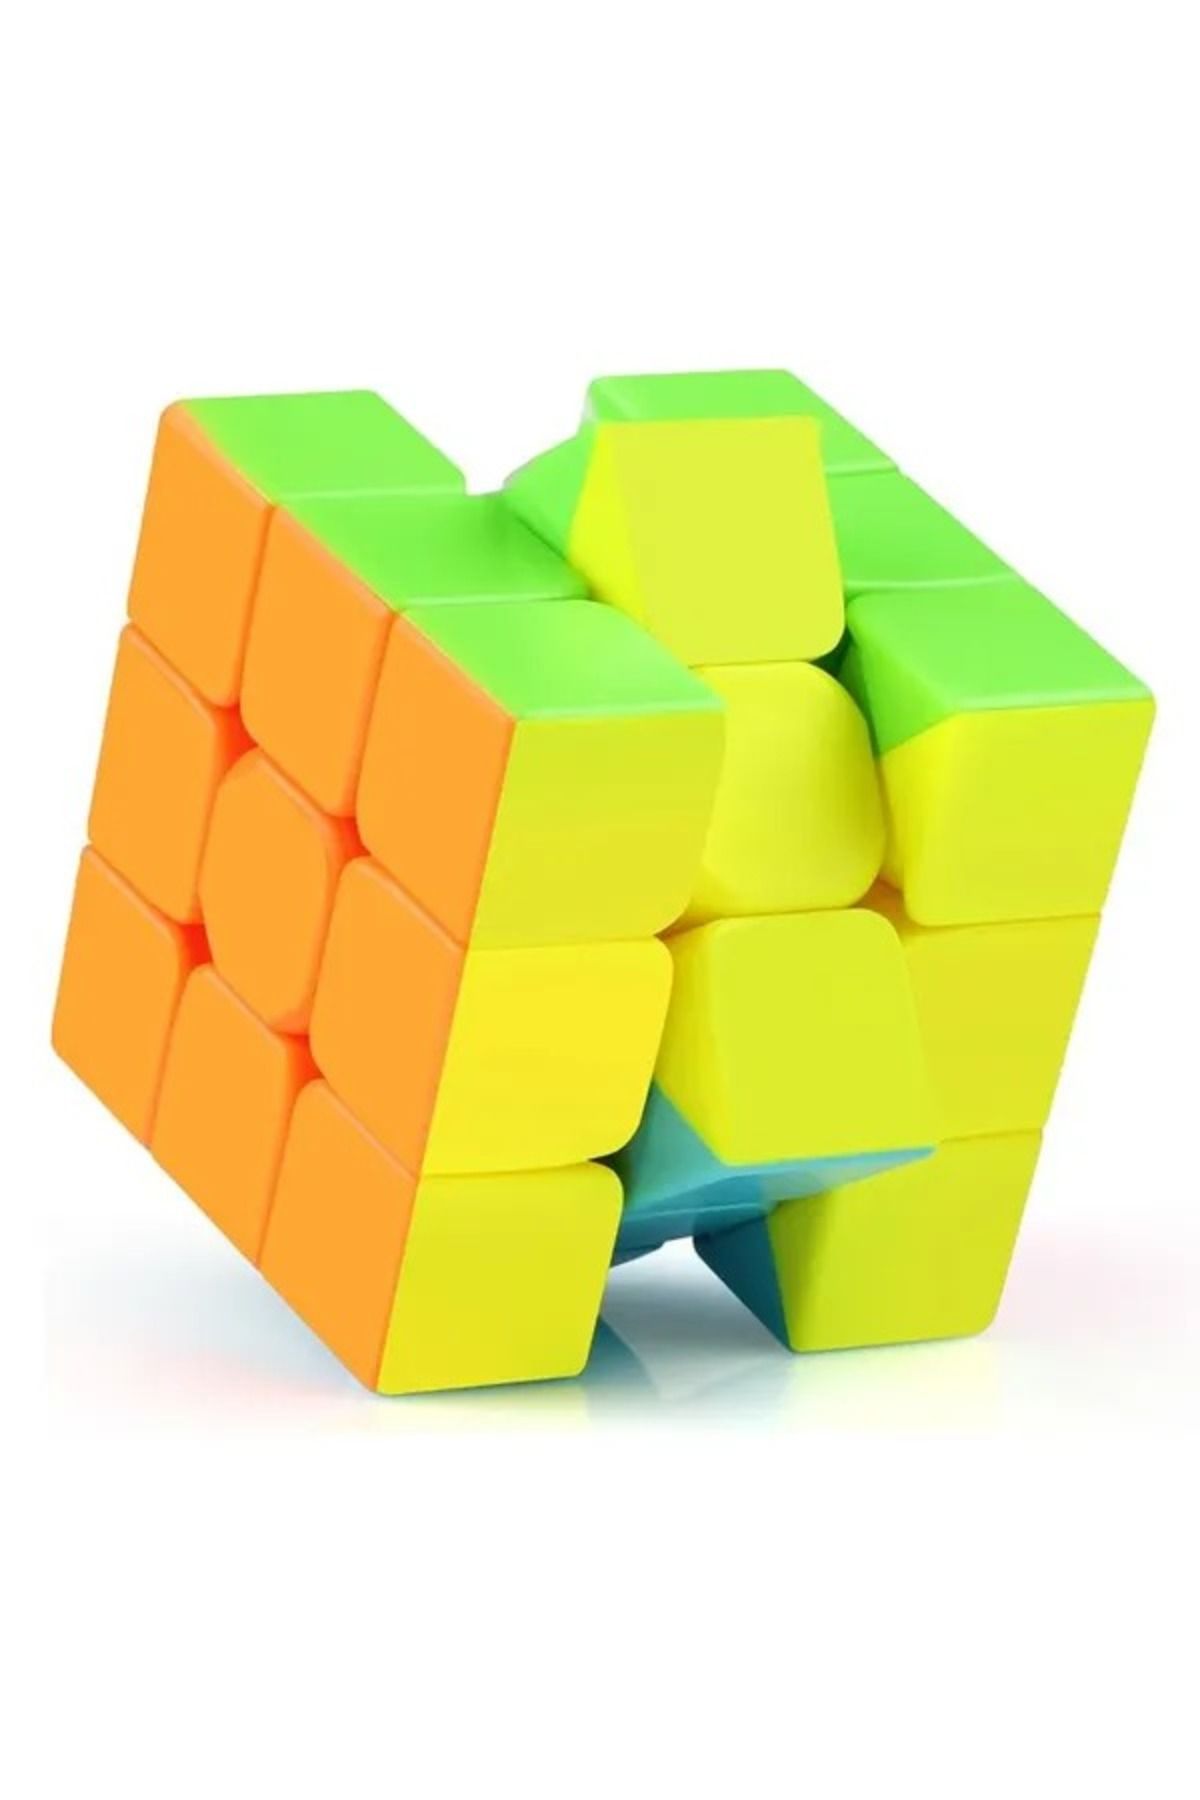 berattoys Rubik Küp Zeka Küpü 3x3 Canlı Renkler Hız Küpü,Fidget Oyuncak Seyahat Zeka Oyunu